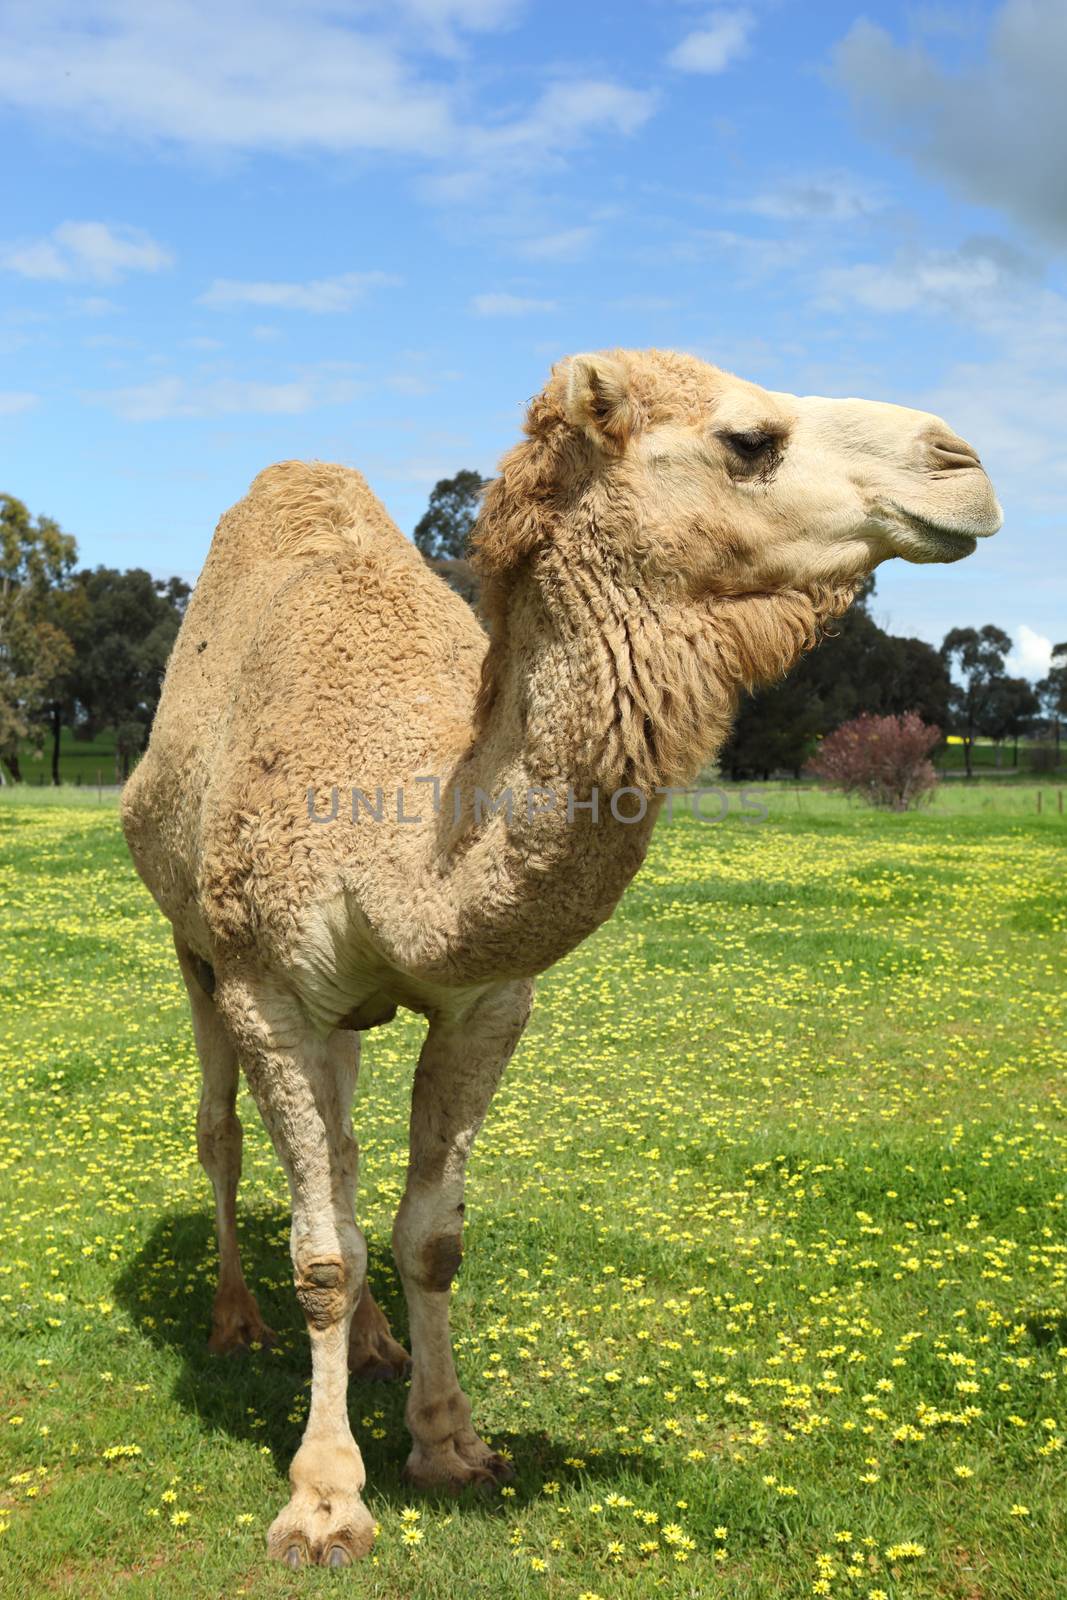 Camel in field by lovleah